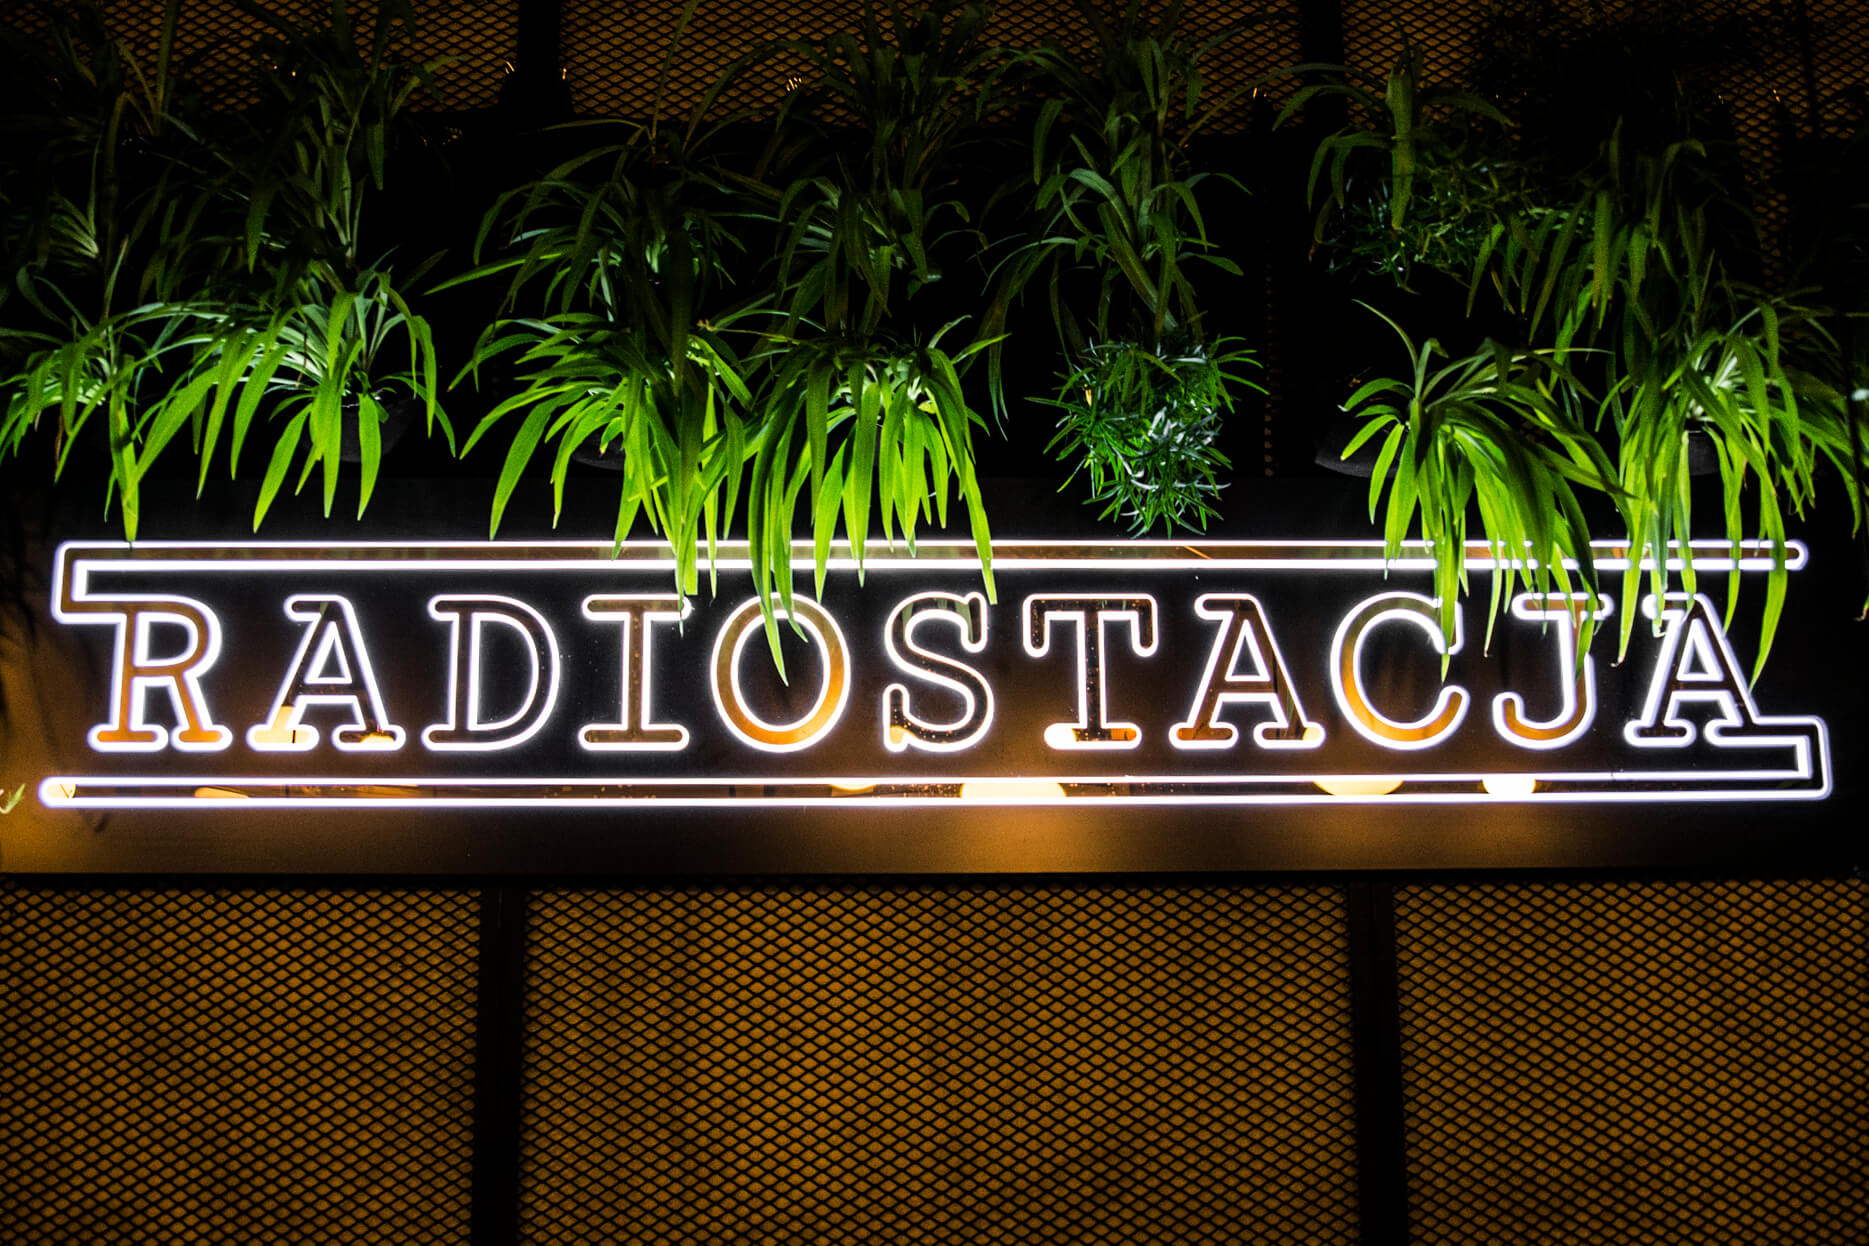 radiostacja - Radiostacja - kaseton świetlny umieszczony wewnątrz restauracji